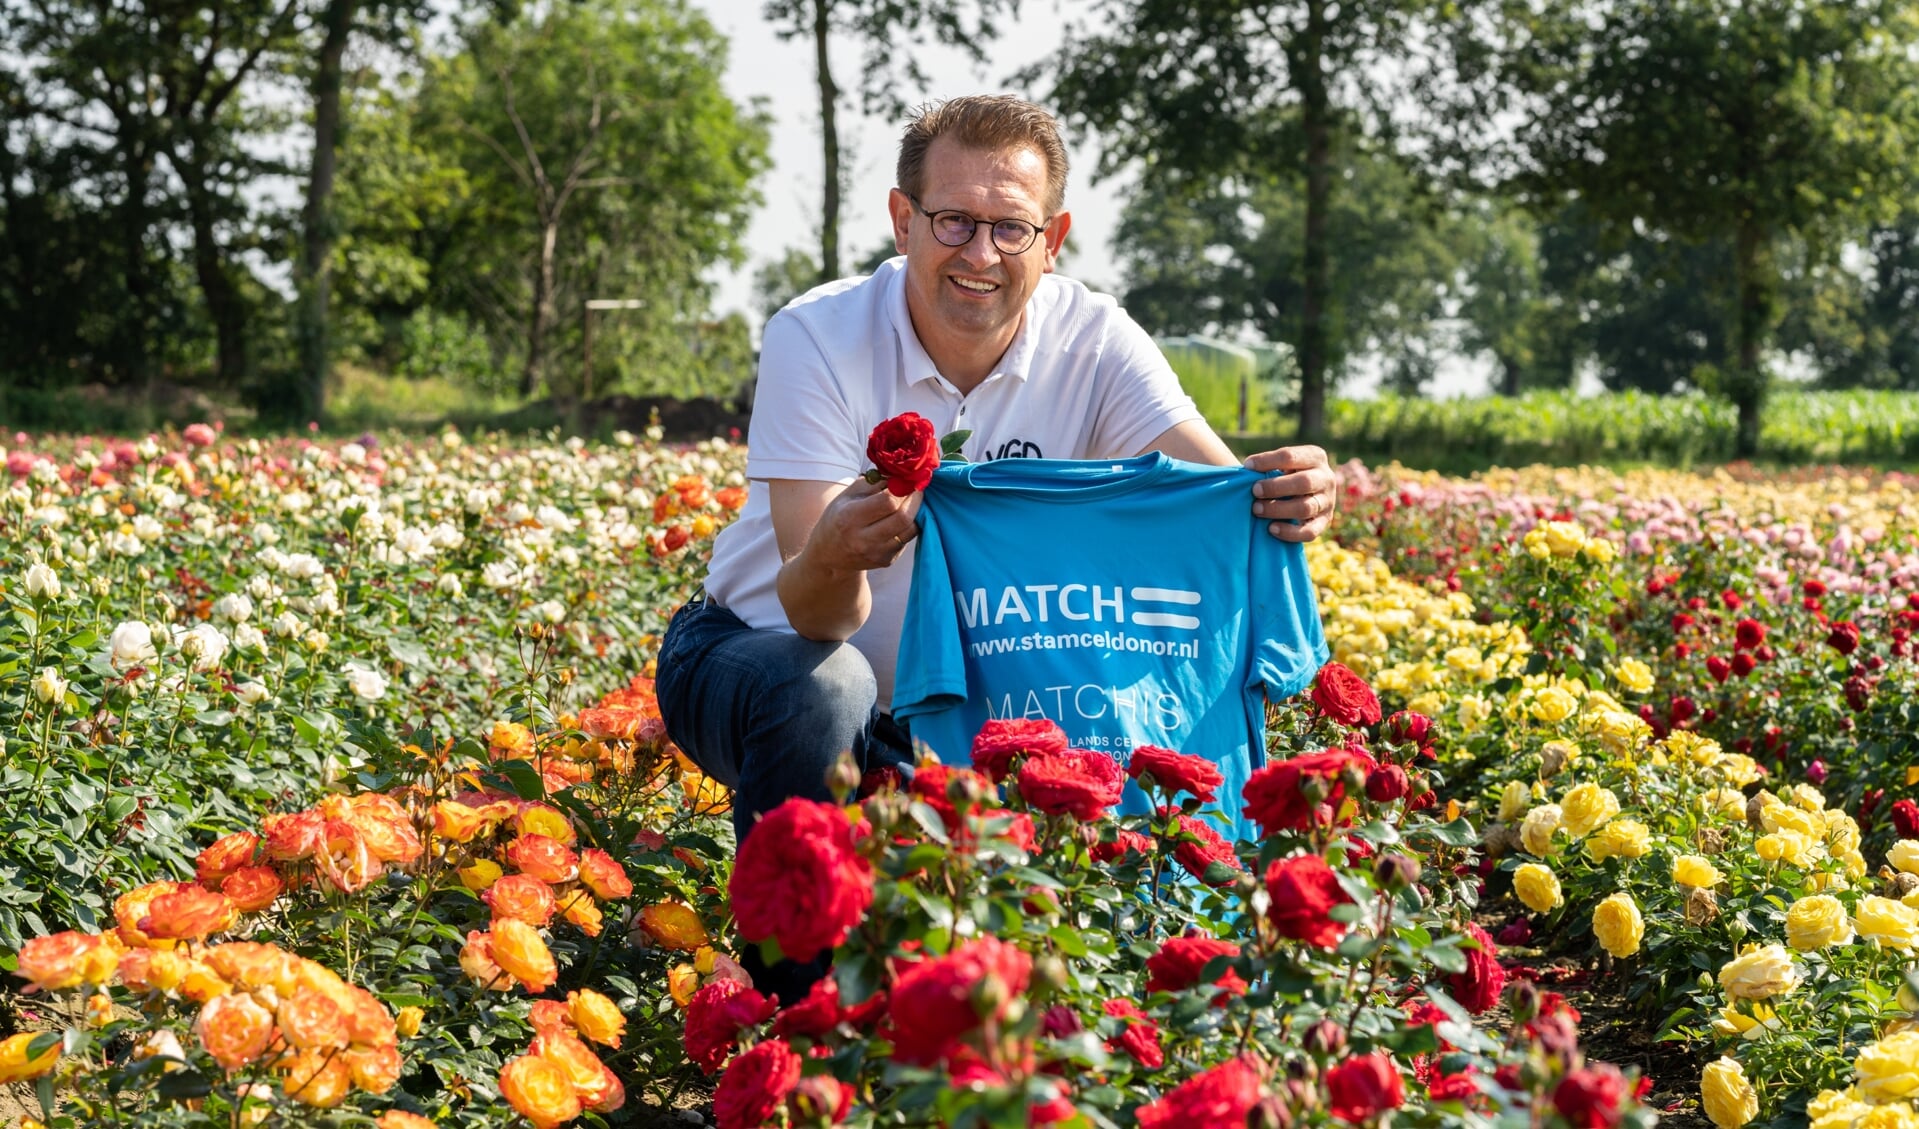 Patrick Wijnhoven zitten trots bij zijn rozen en in het bijzonder de rode Rosa Matchis.